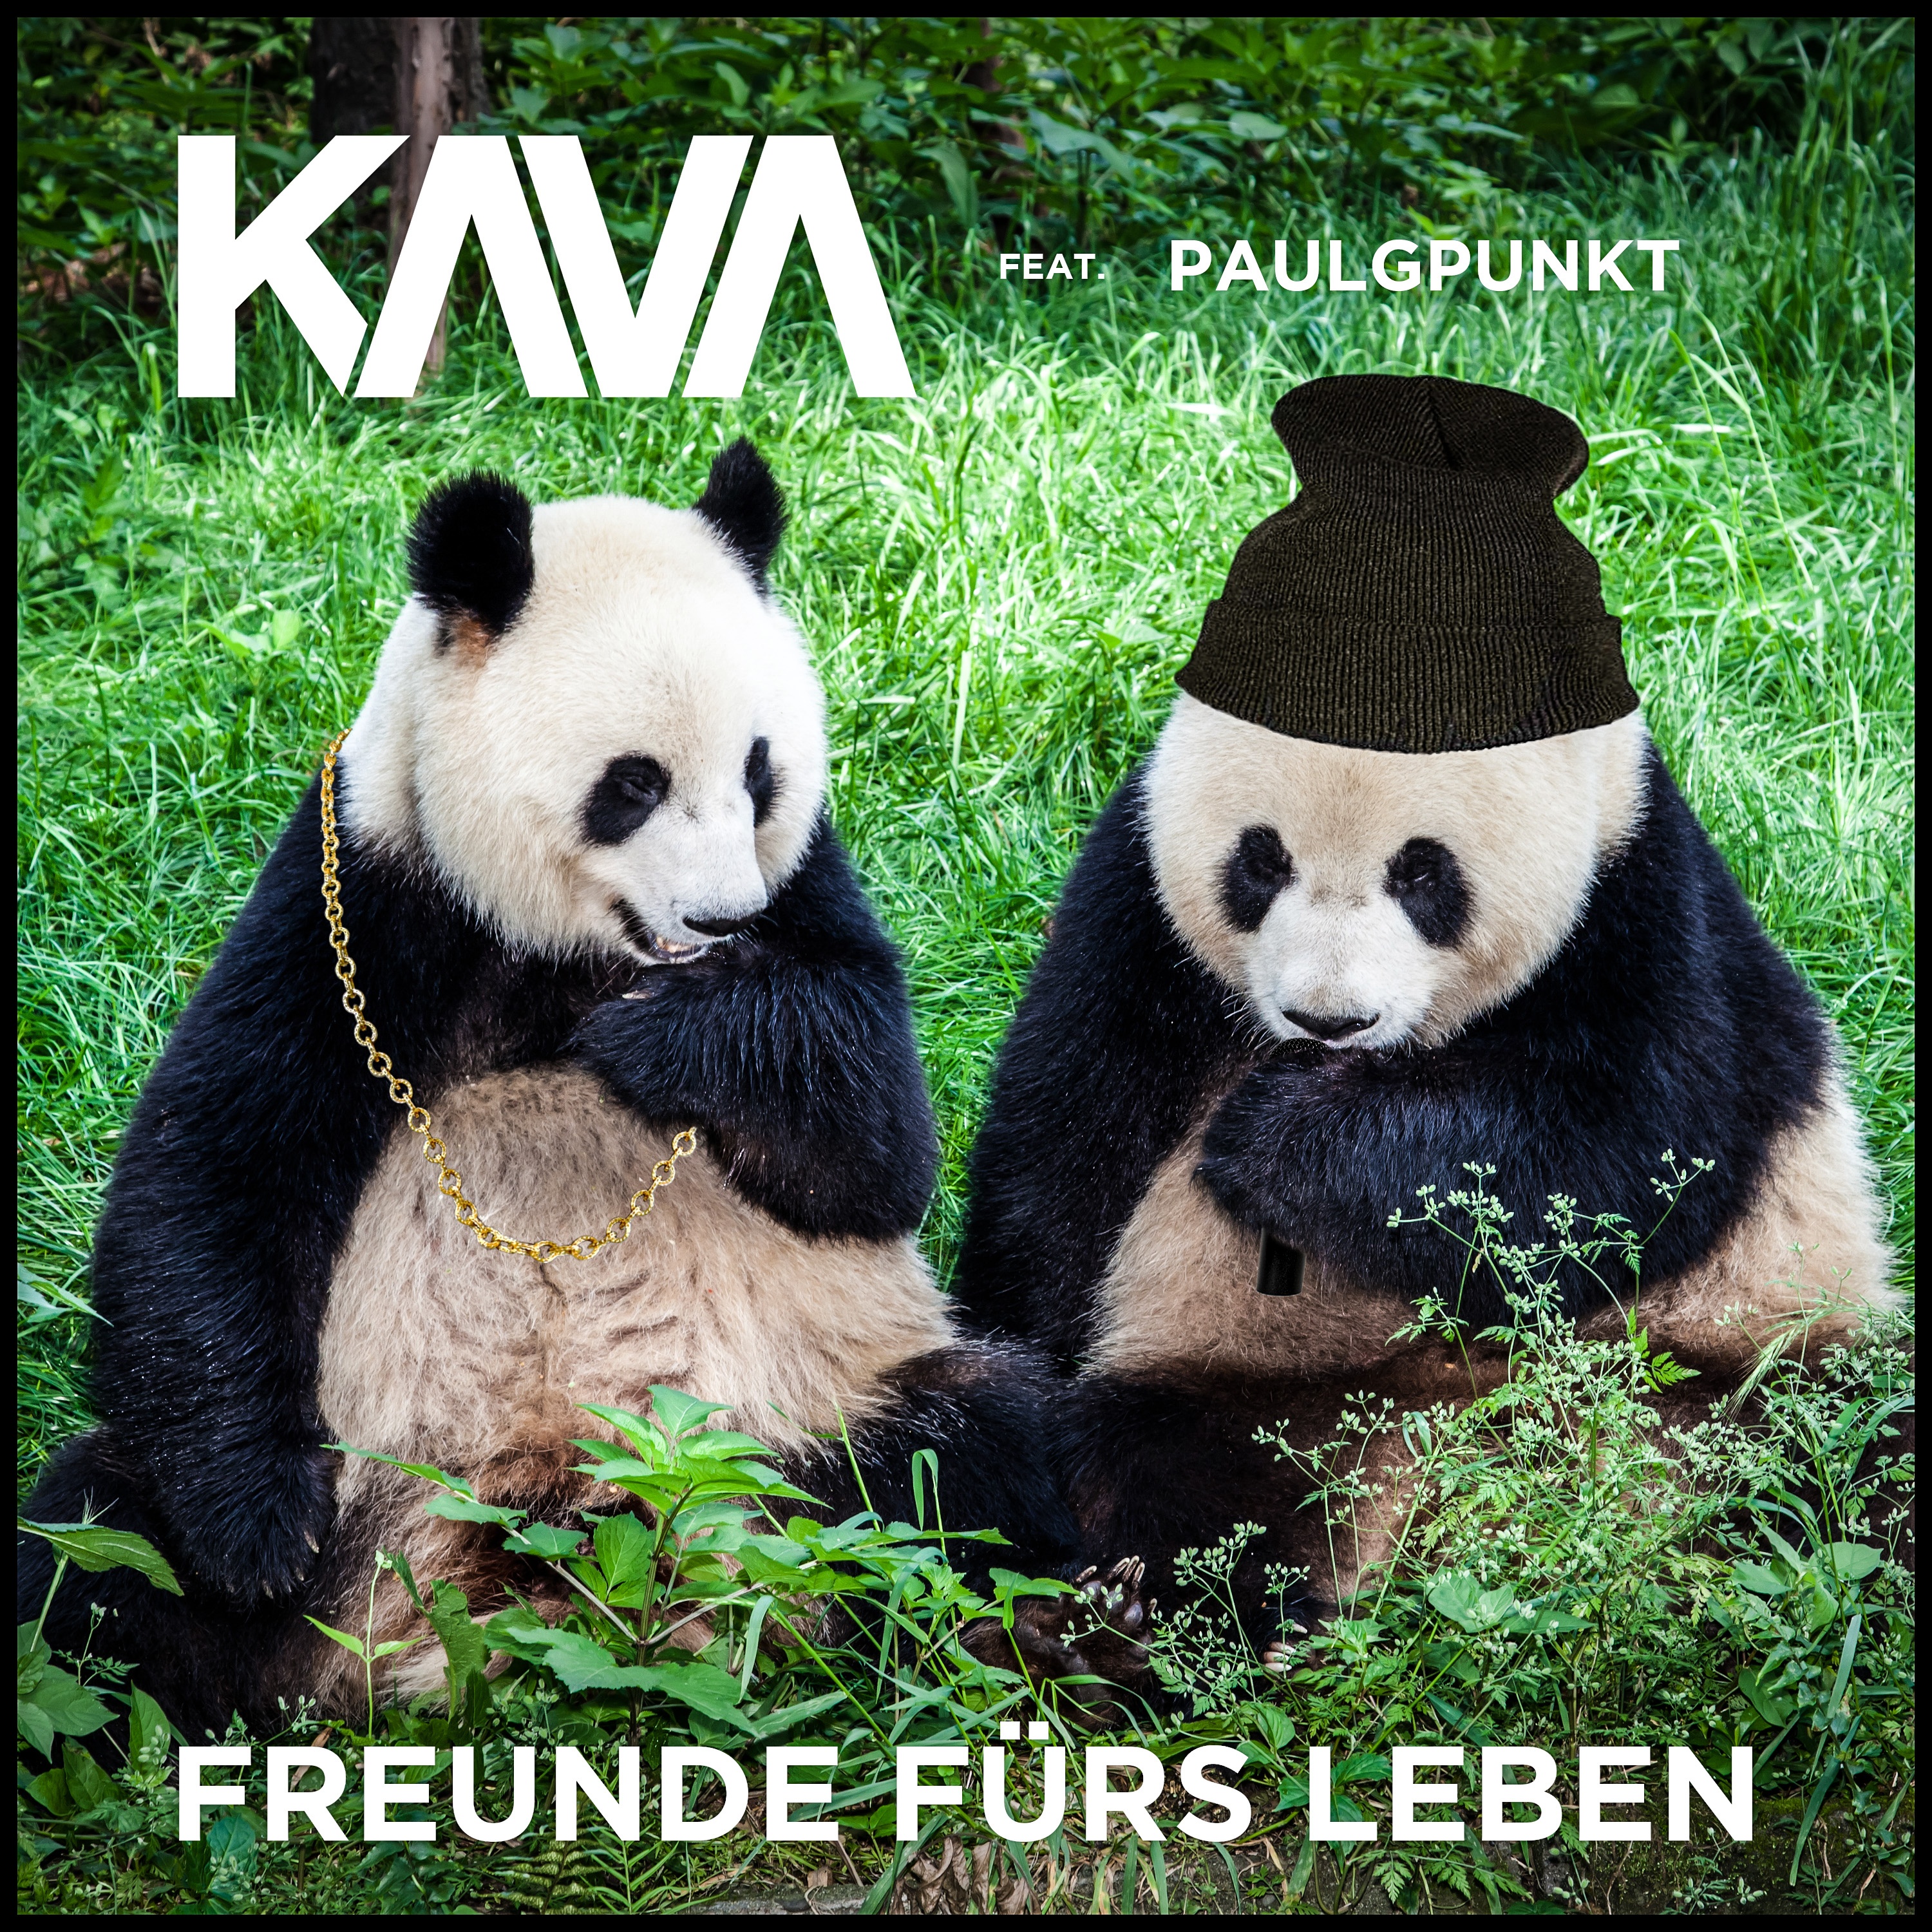 KAVA feat. paulgpunkt - Freunde fürs Leben downloaden und bequem mit der Ha...